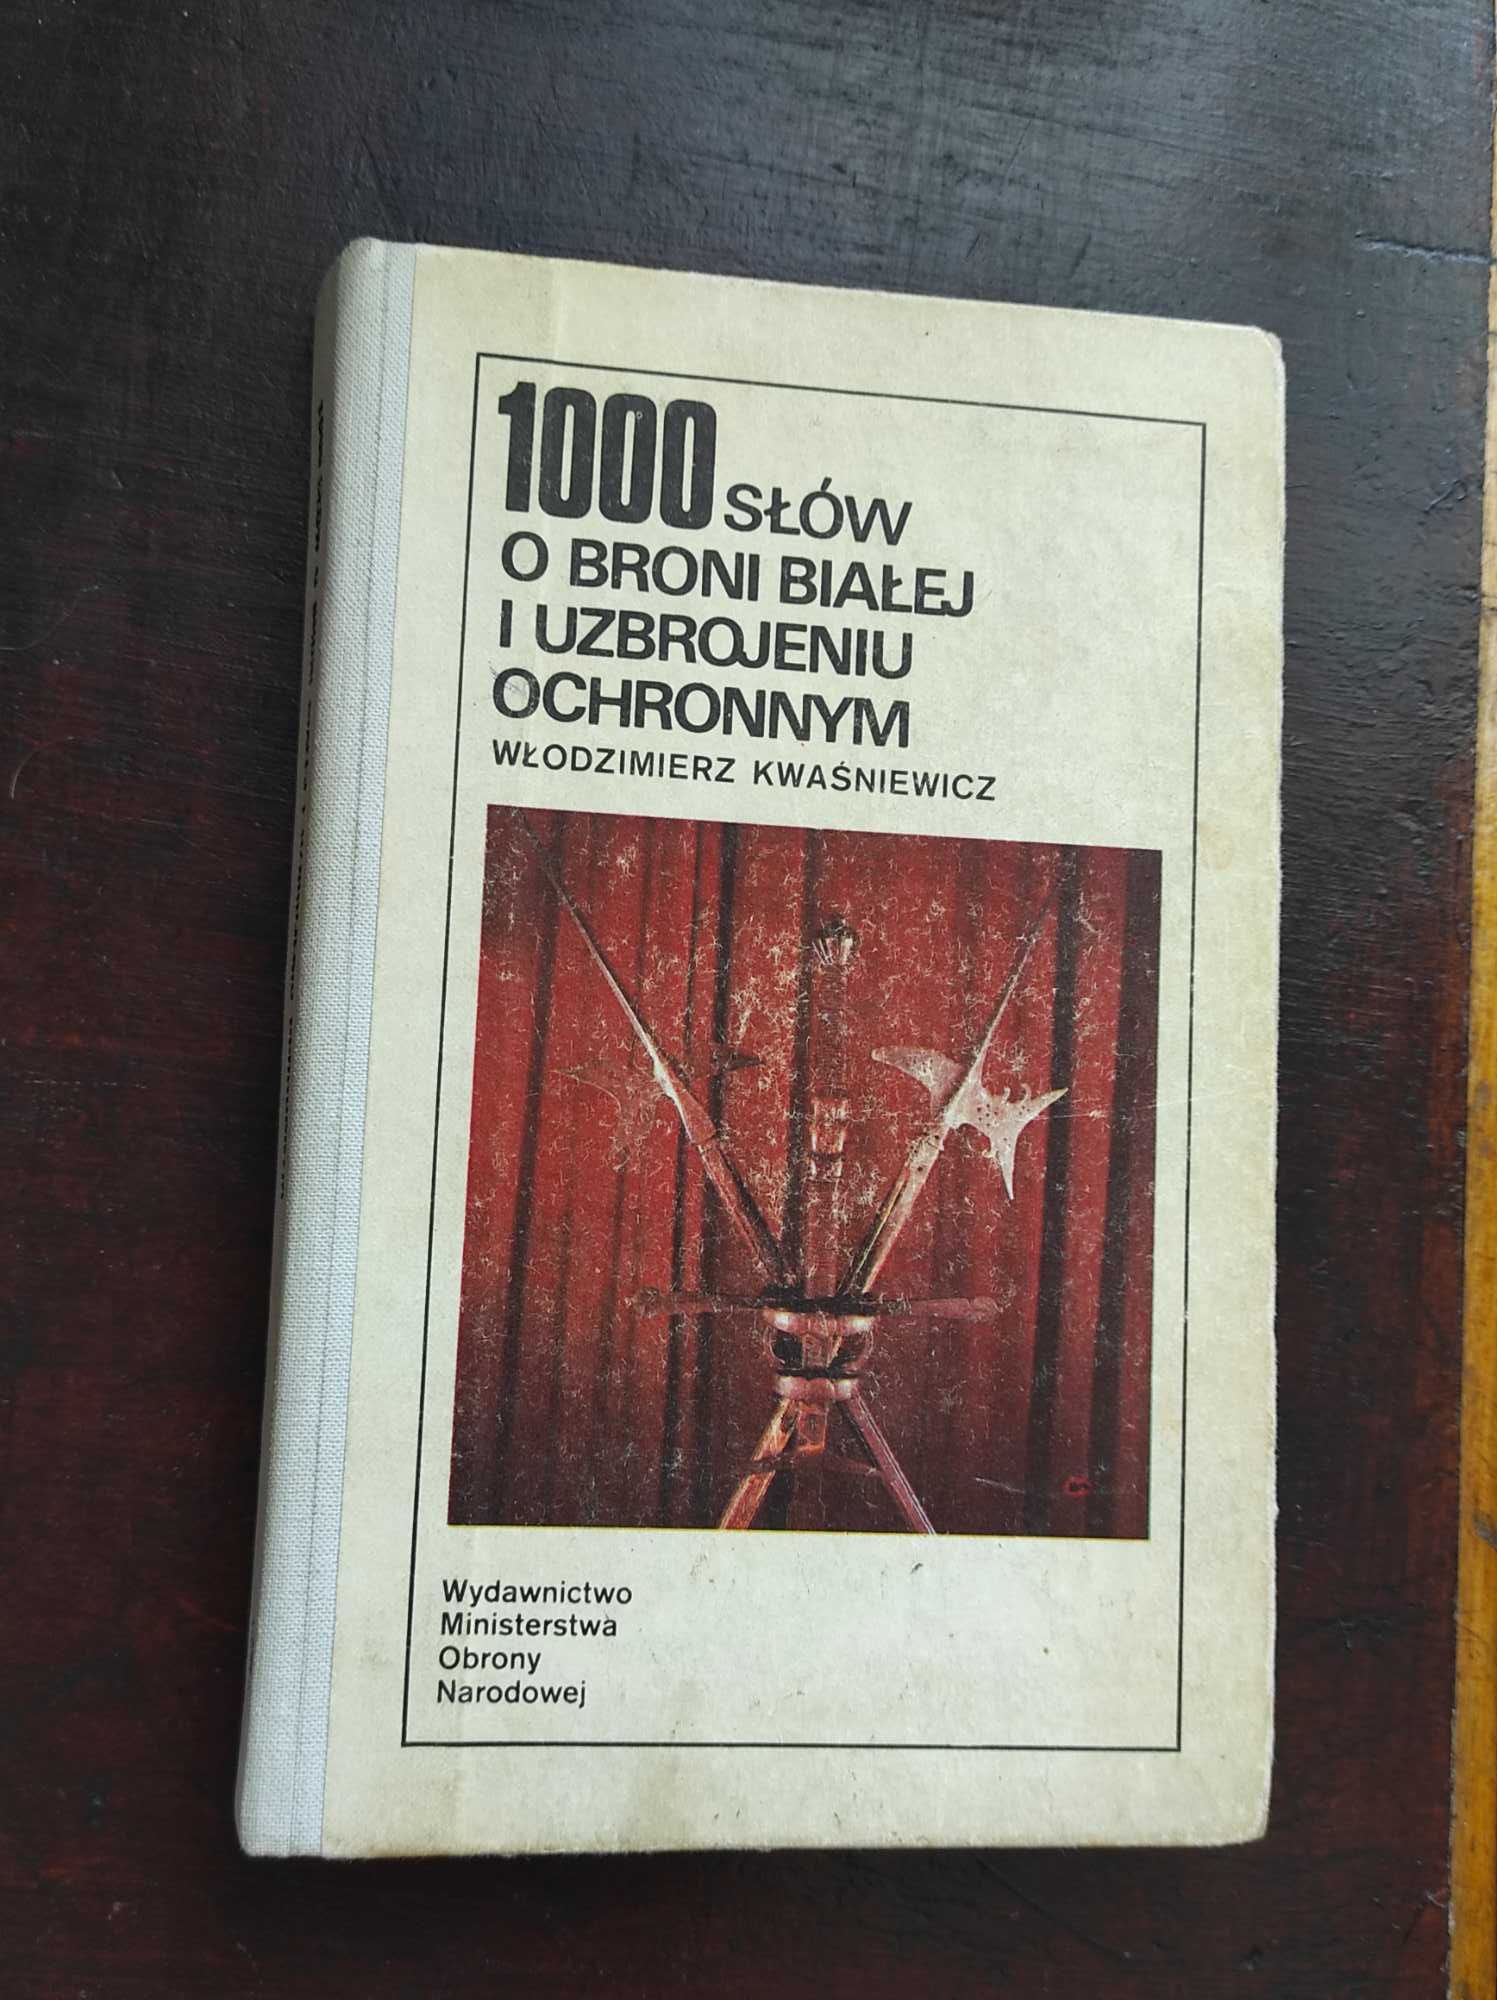 1000 słów o broni białej i uzbrojeniu ochronnym - W.Kwaśniewicz, 1989r